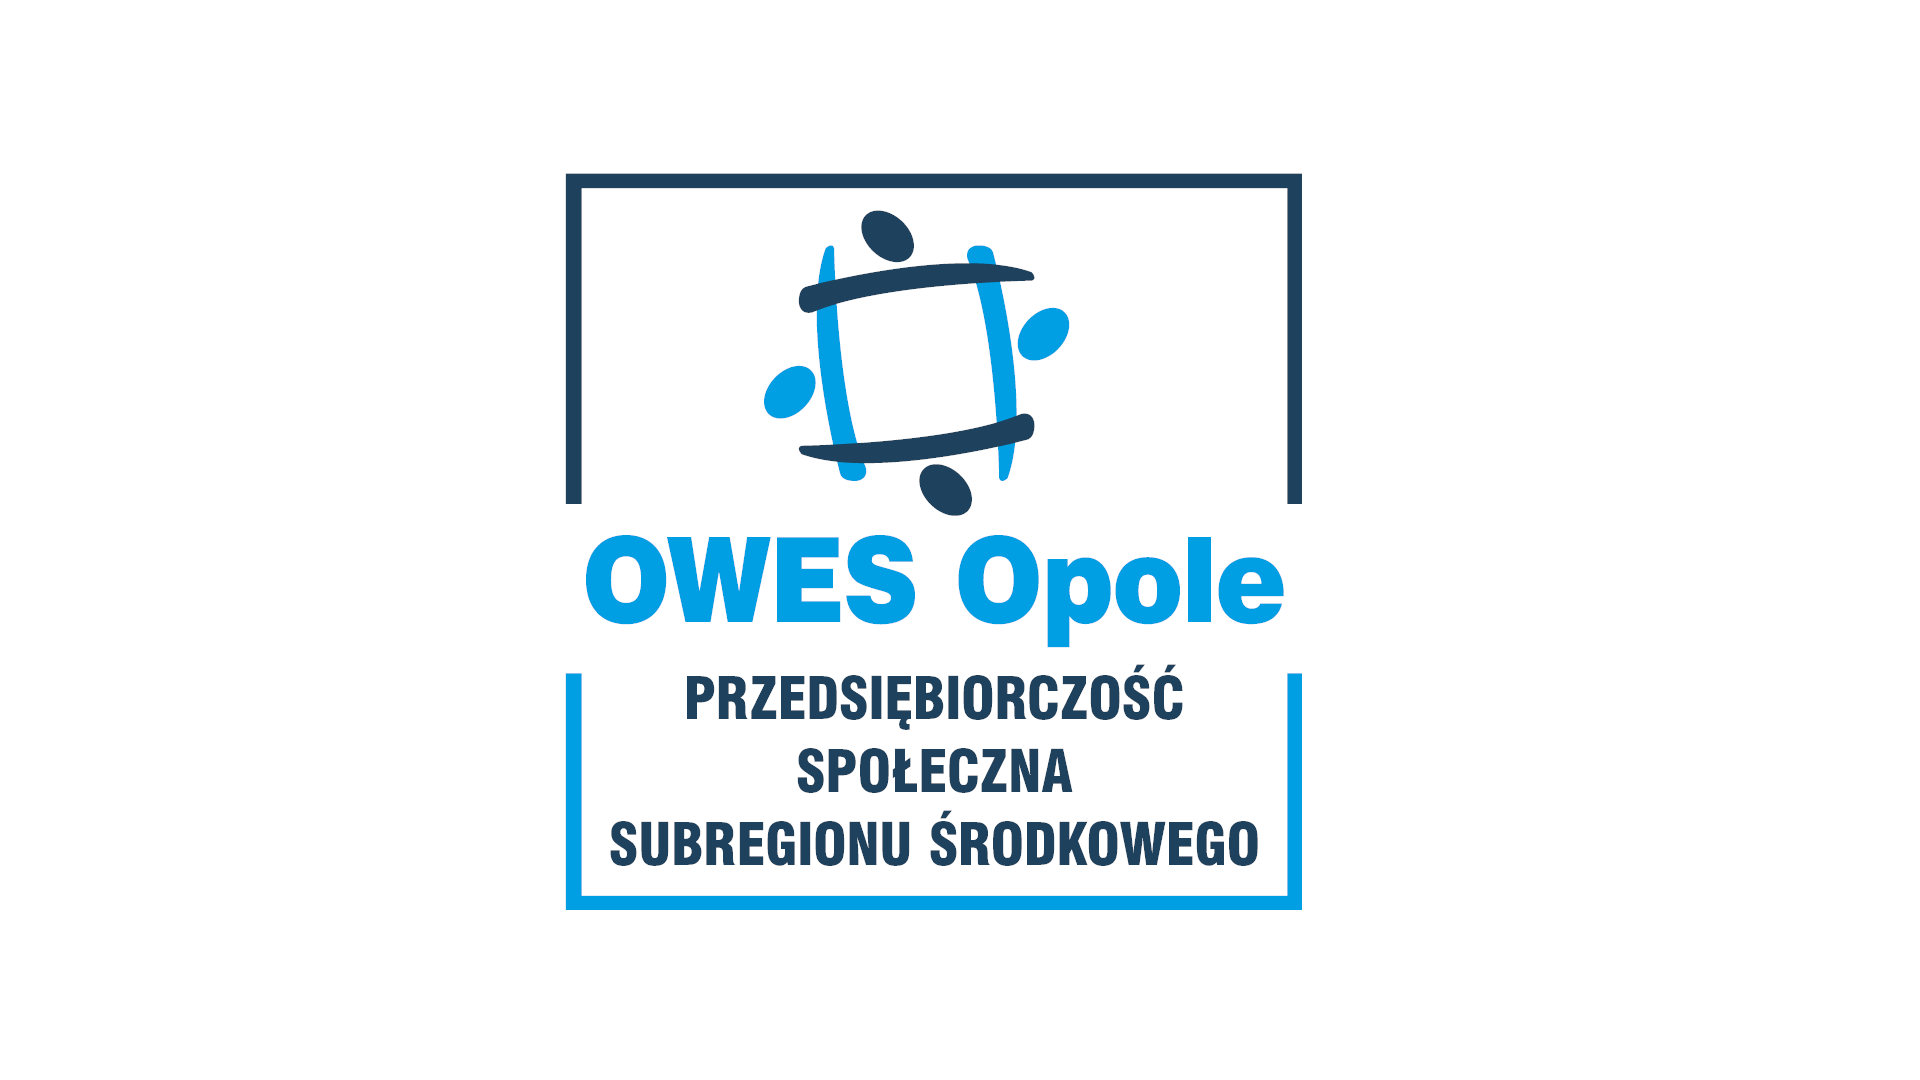 OWES Opole